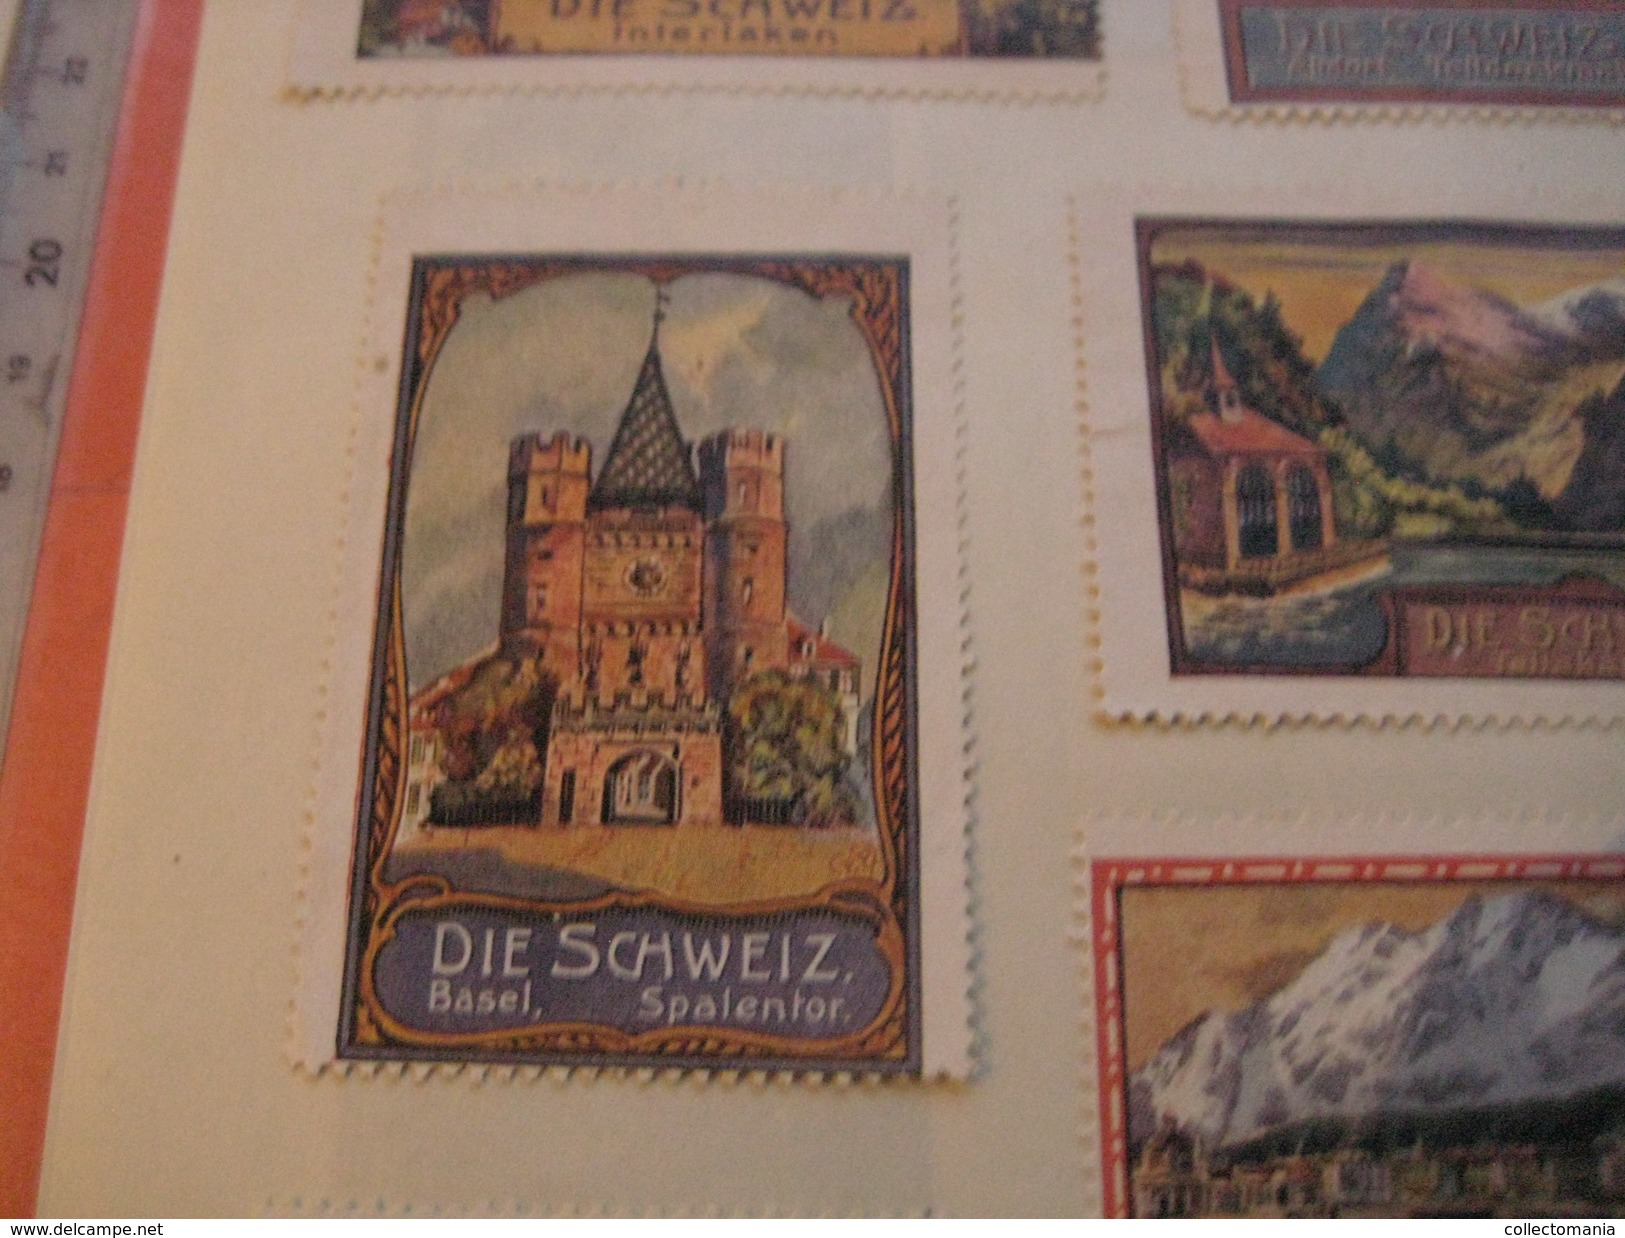 20 Poster Stamp Advertising Litho SCHWEIZ Suisse Switserland Weltpostdenkmal Very Good Condition - Cinderellas